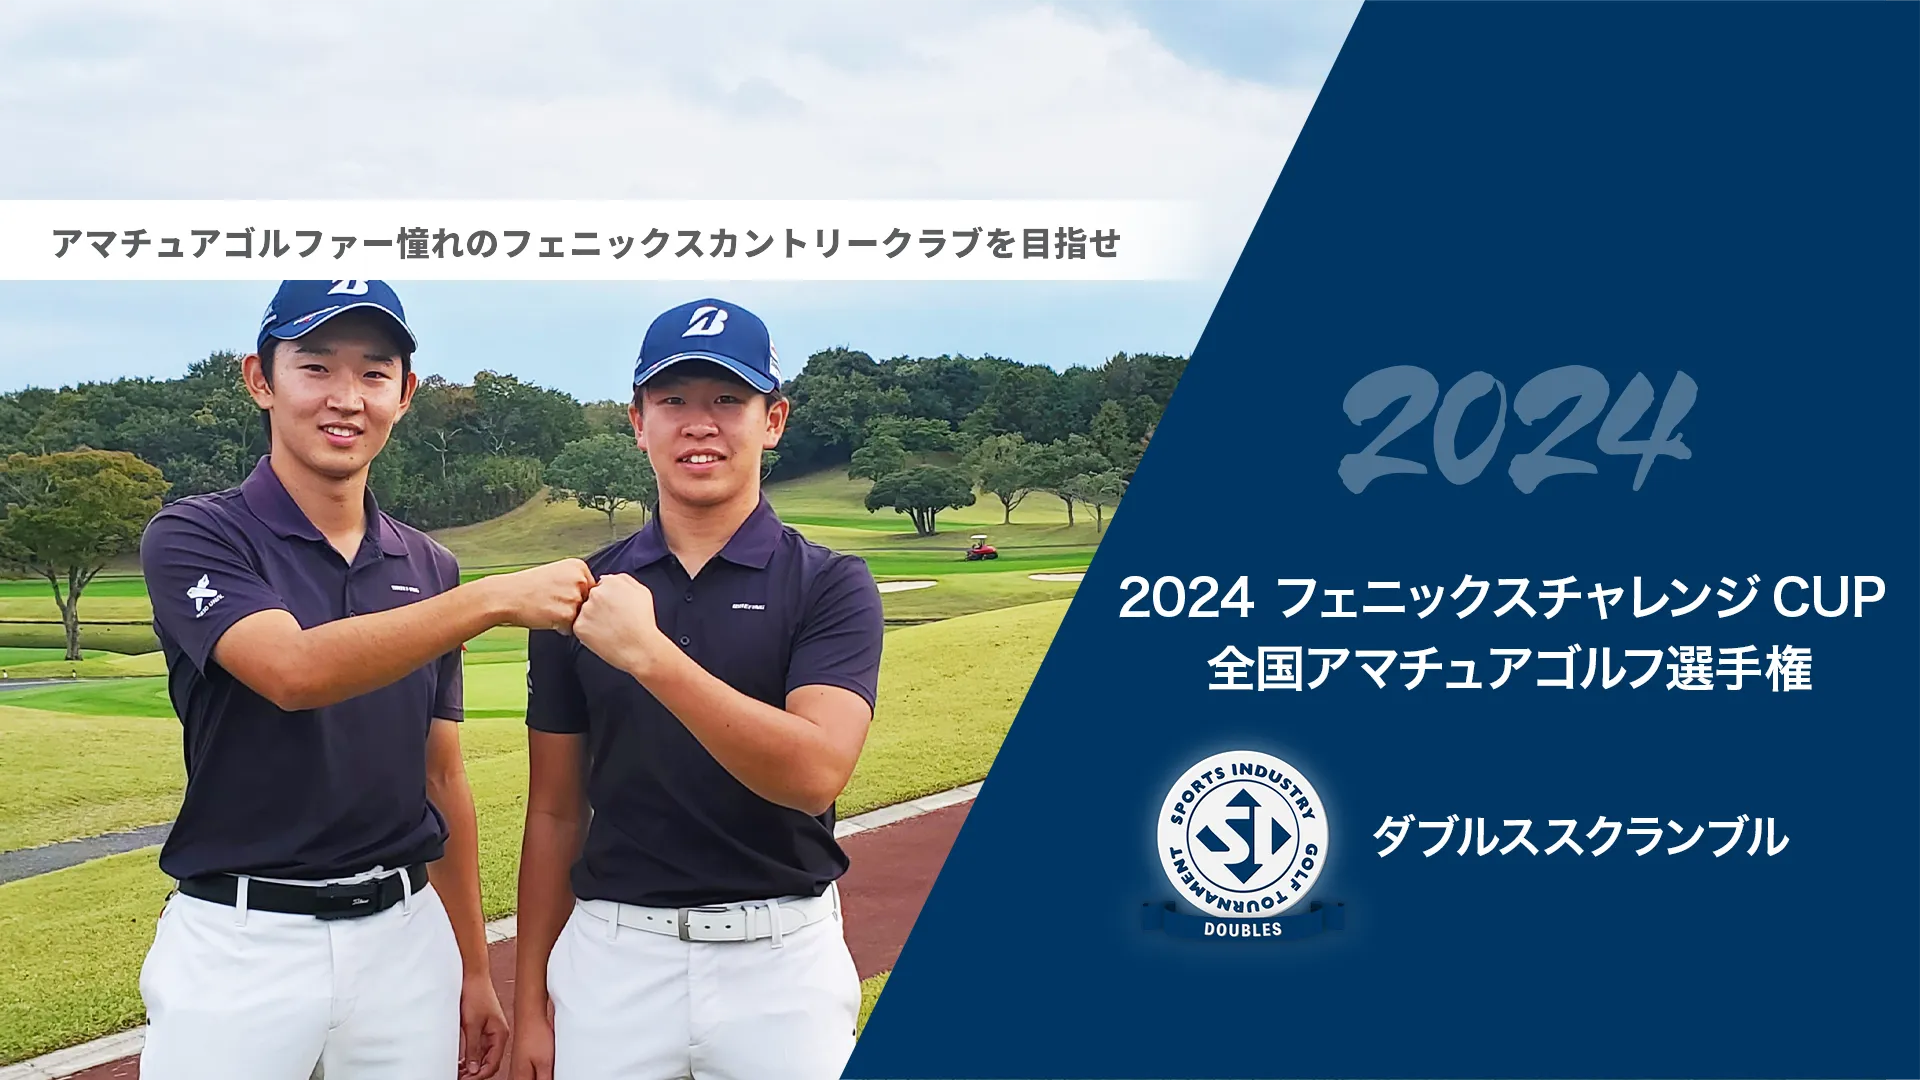 2024フェニックスチャレンジCUP_全国アマチュアゴルフ選手権_ダブルススクランブル